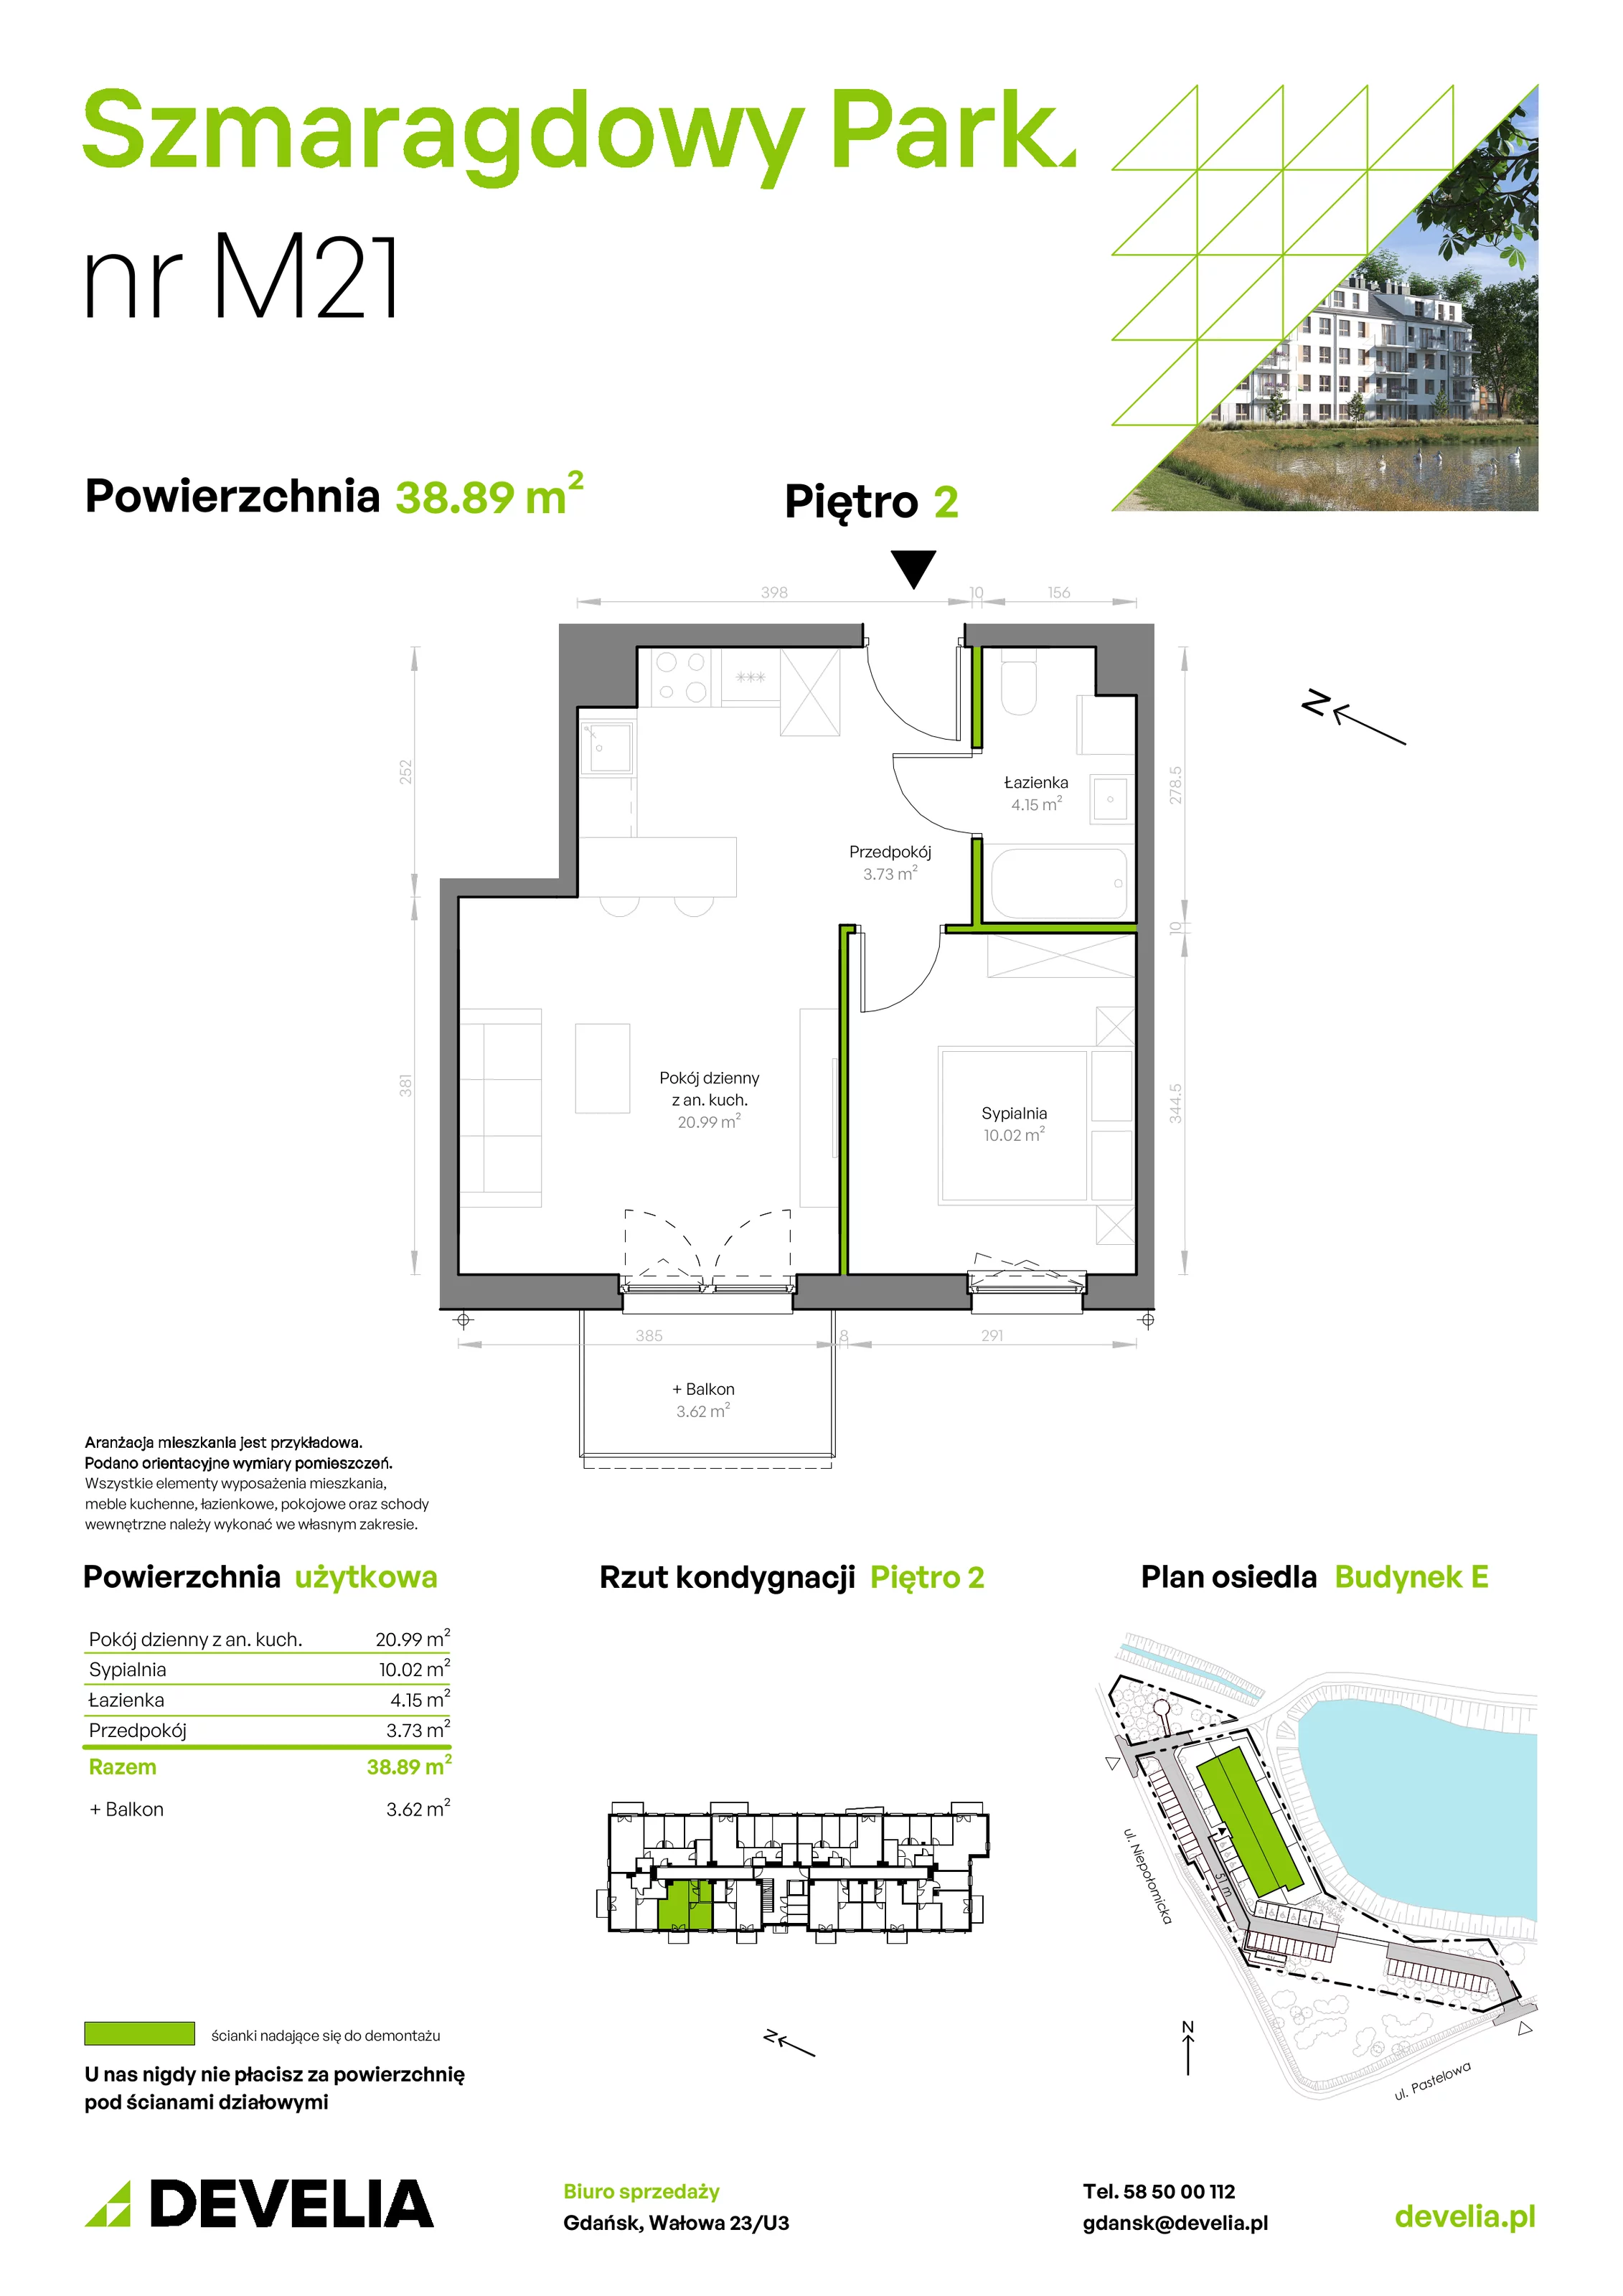 Mieszkanie 38,89 m², piętro 2, oferta nr E/021, Szmaragdowy Park, Gdańsk, Orunia Górna-Gdańsk Południe, Łostowice, ul. Topazowa 2